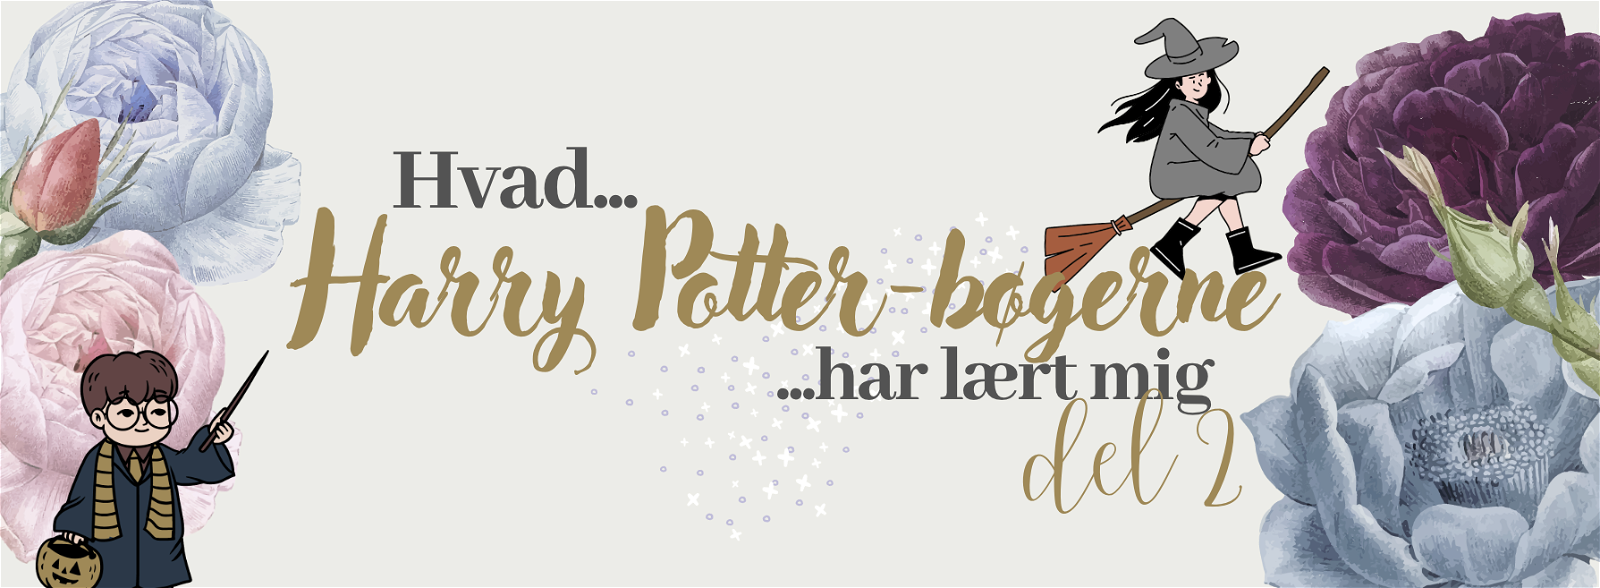 Hvad Harry Potter-bøgerne har lært mig – del 2